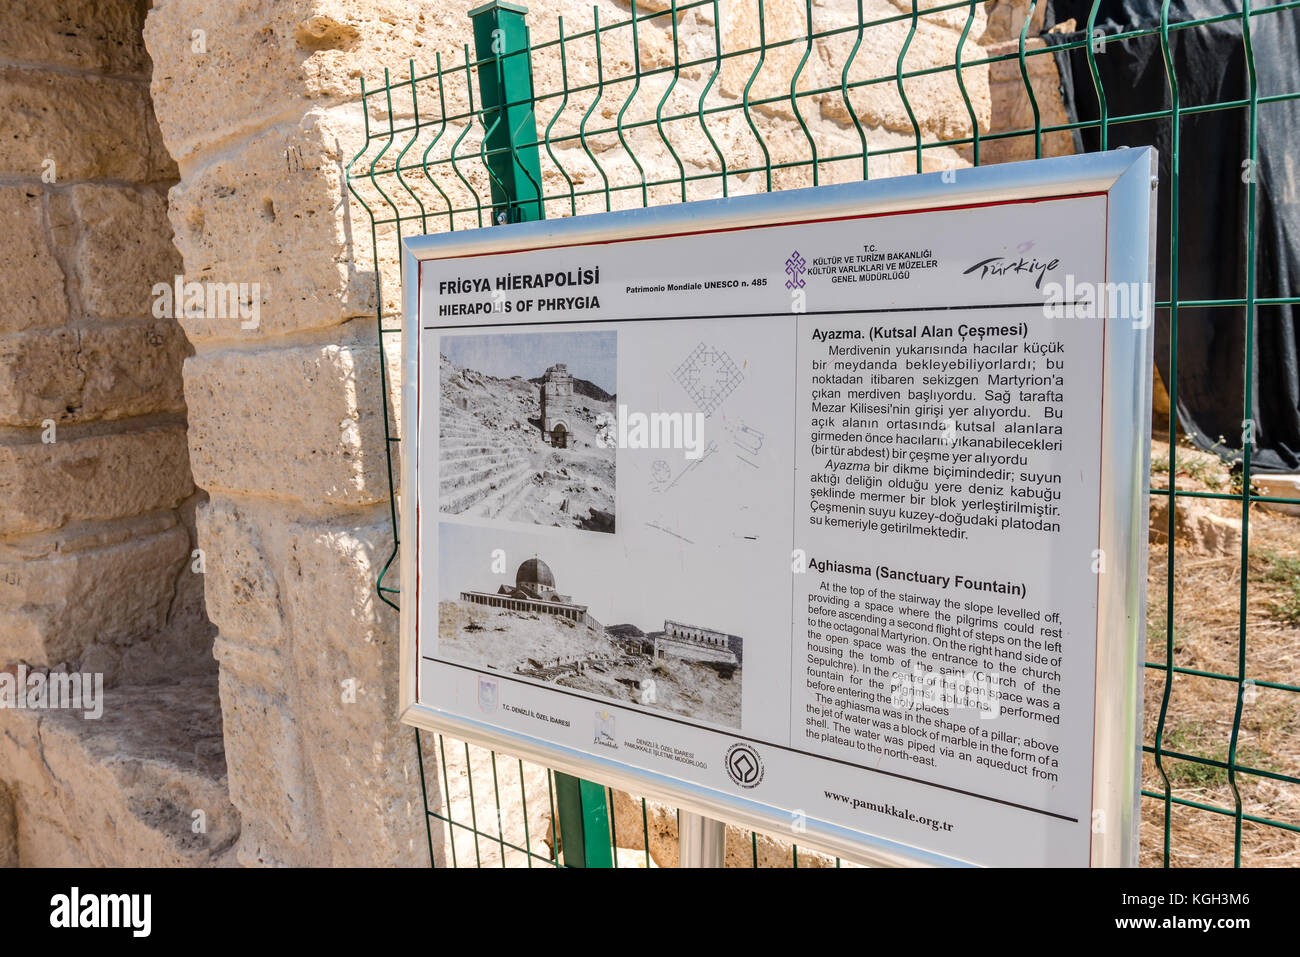 Inscrivez-vous sur aghiasma (fontaine sanctuaire)dans le grec ancien ville Hiérapolis, Pamukkale, Turquie. Banque D'Images